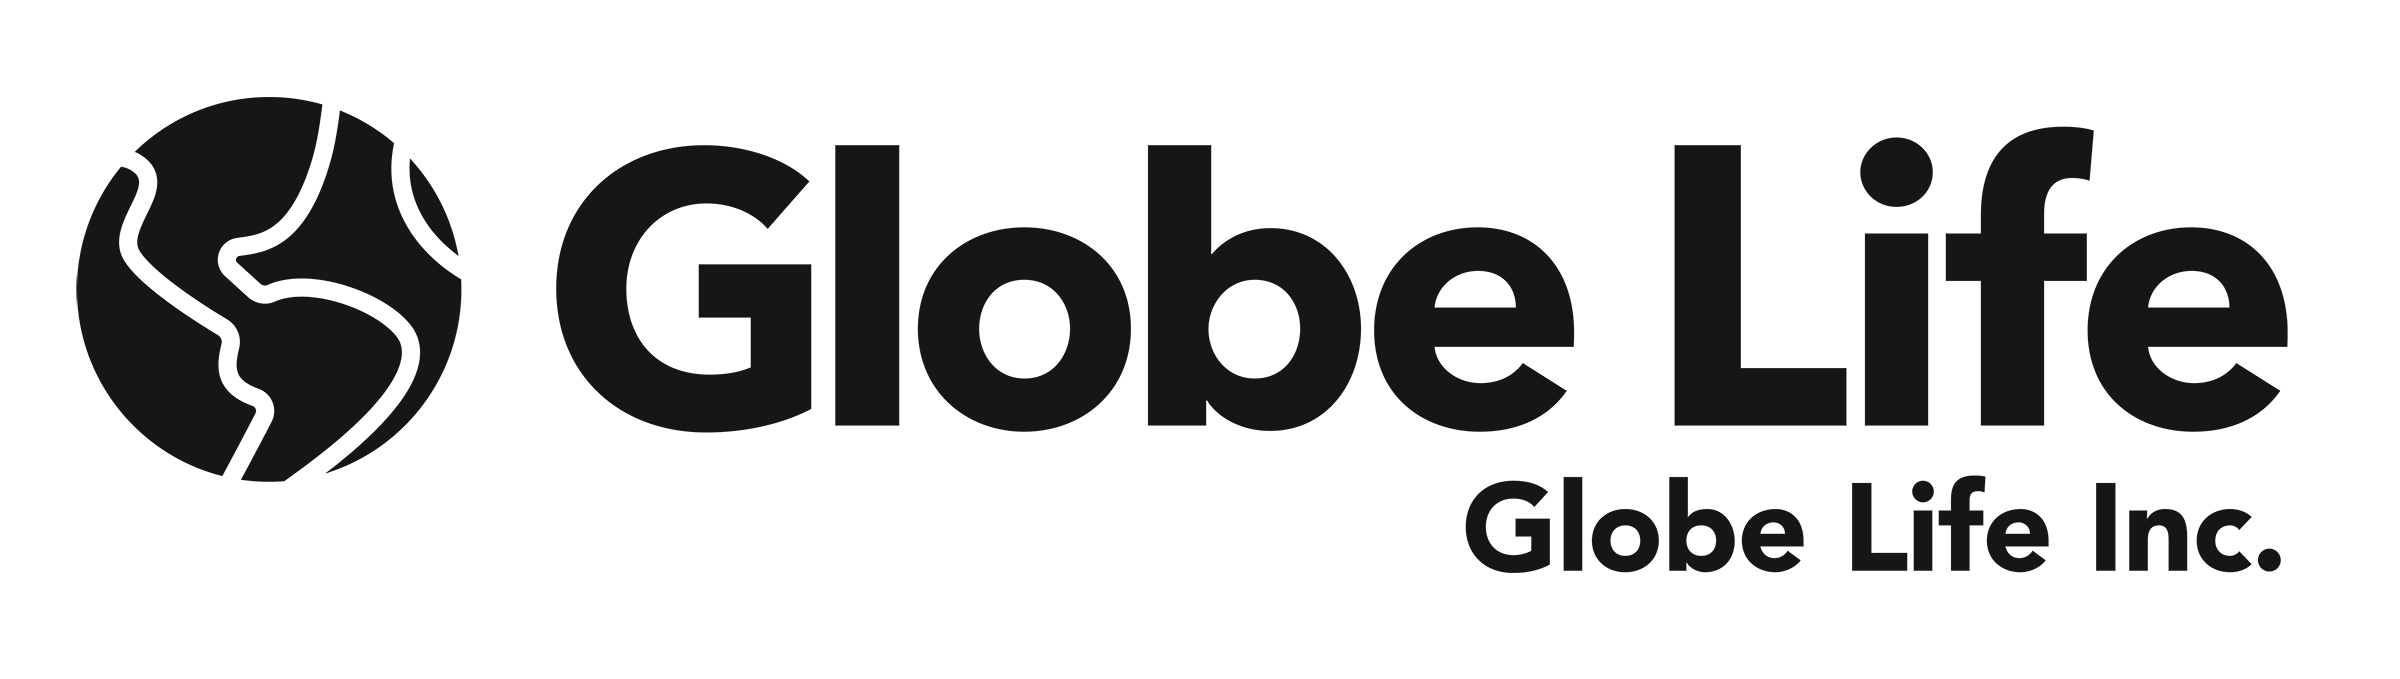 globelifeincblack1.jpg